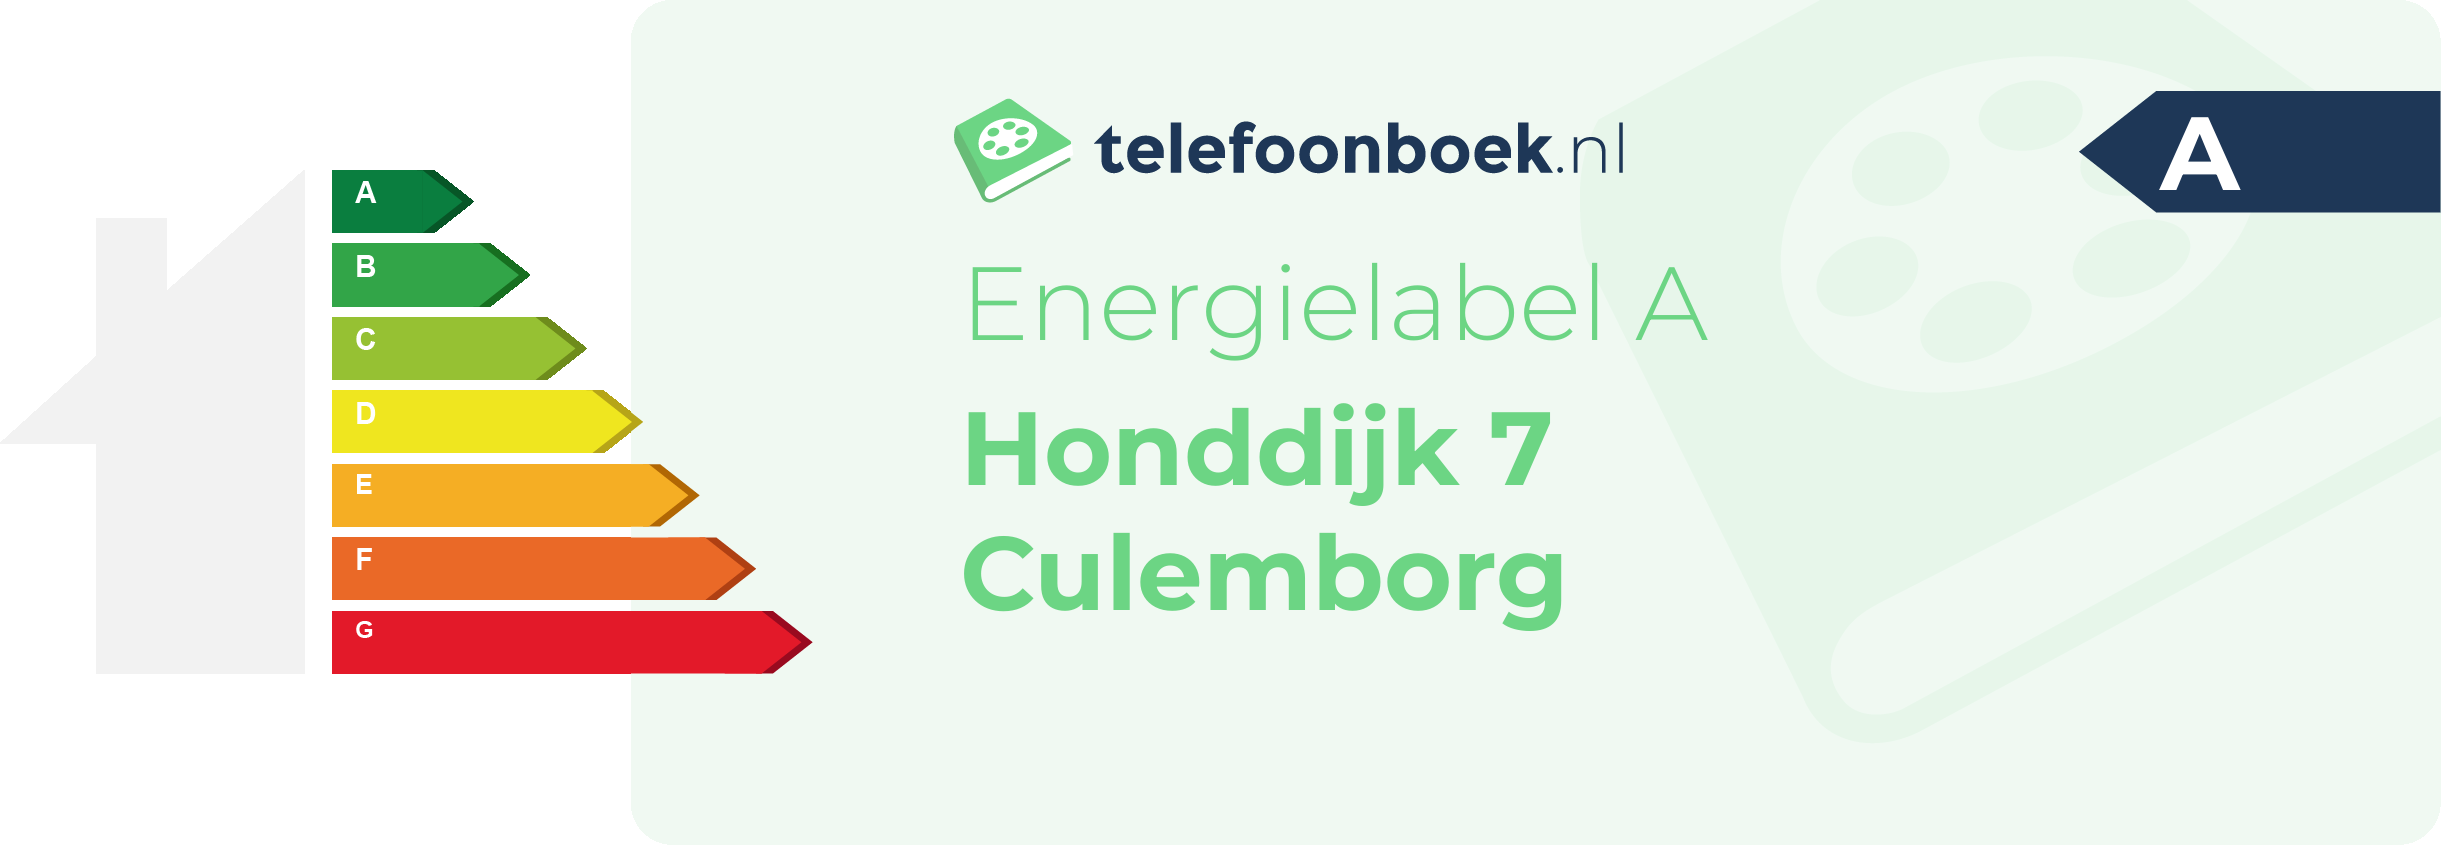 Energielabel Honddijk 7 Culemborg